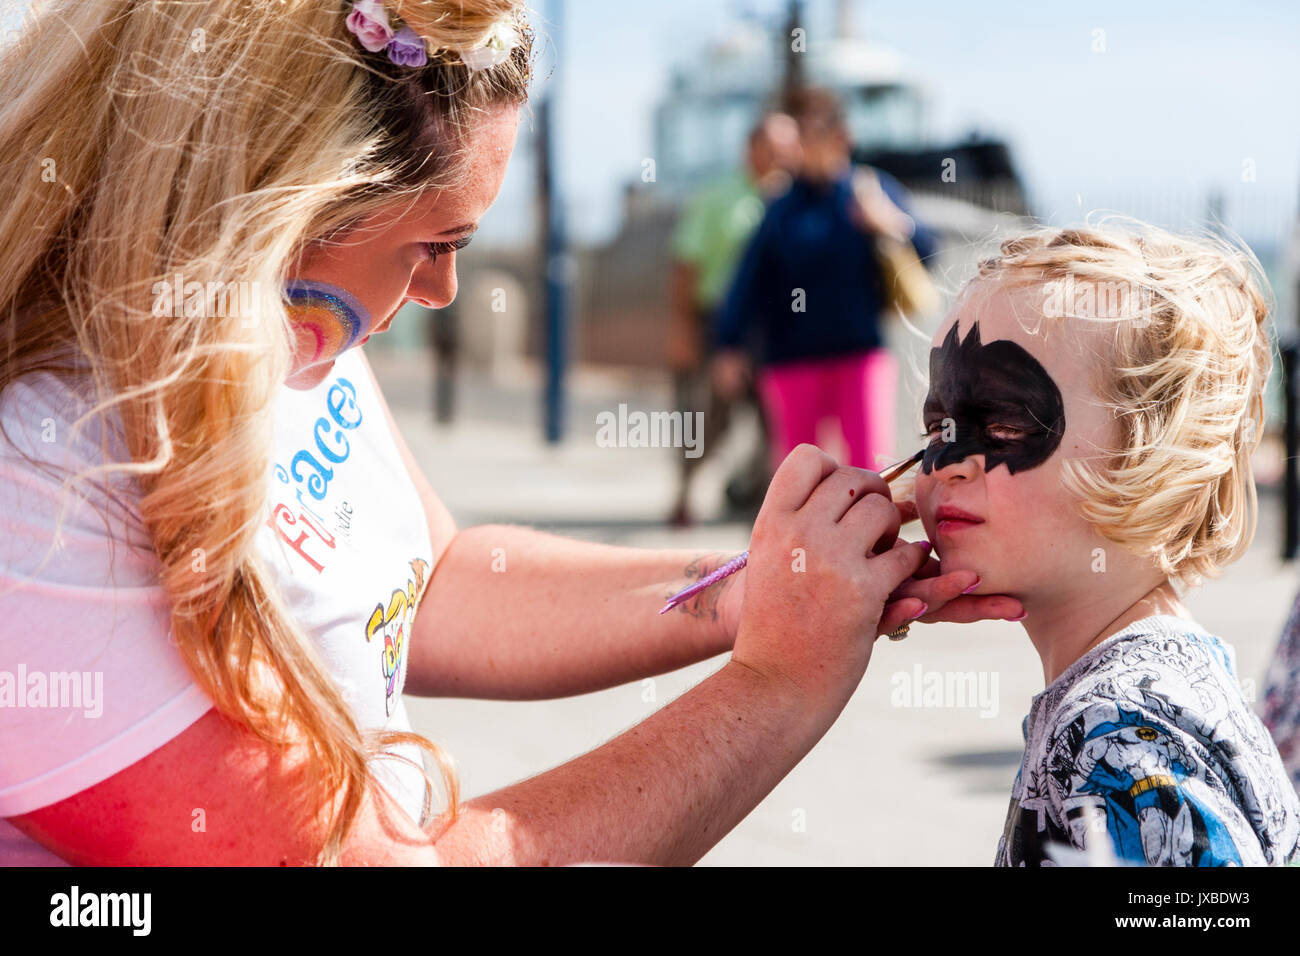 Jeune caucasien enfant, fille, 5-6 ans, assis au soleil d'avoir son visage peint avec un masque de type batman par femme blonde. Banque D'Images